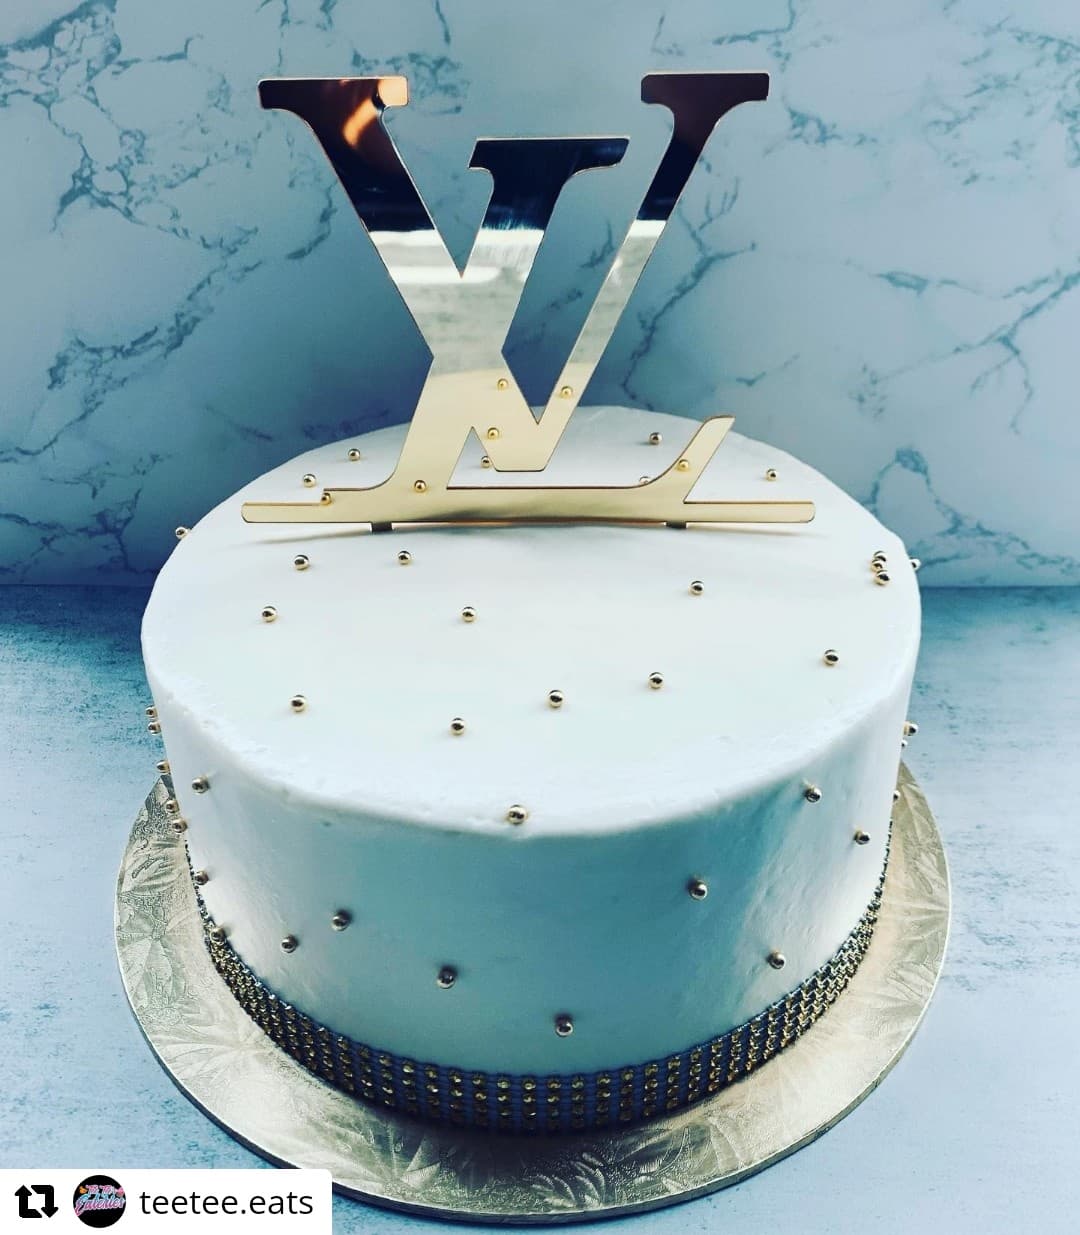 Elegant Lady Silhouette - Fashion Birthday Cake Topper.NEW!!! | eBay